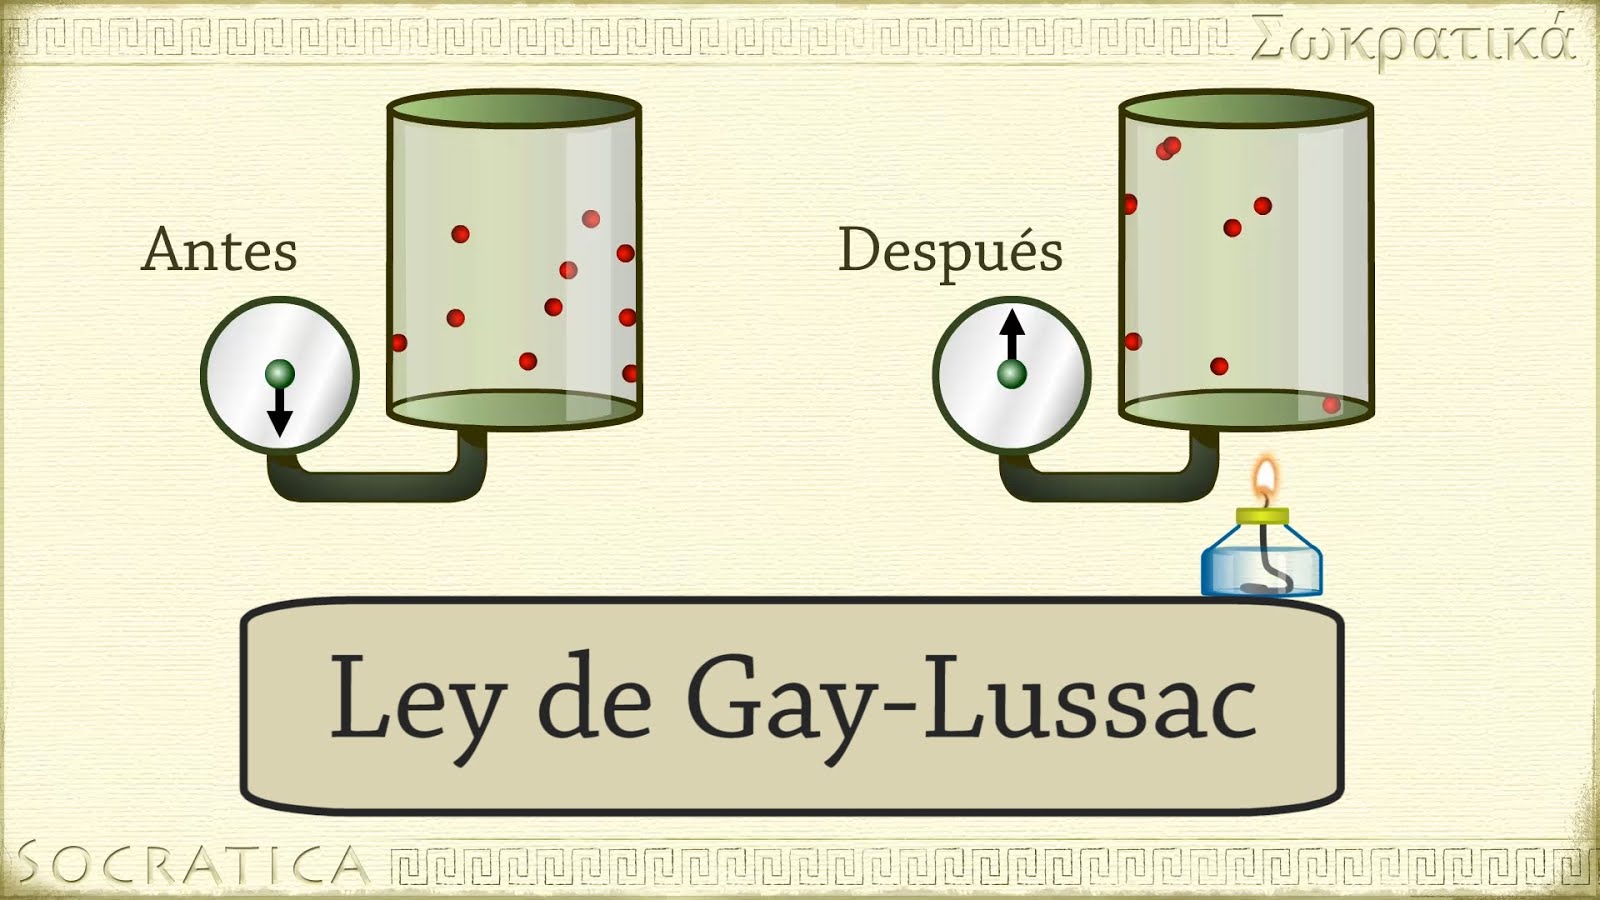 Ley de Gay-Lusac